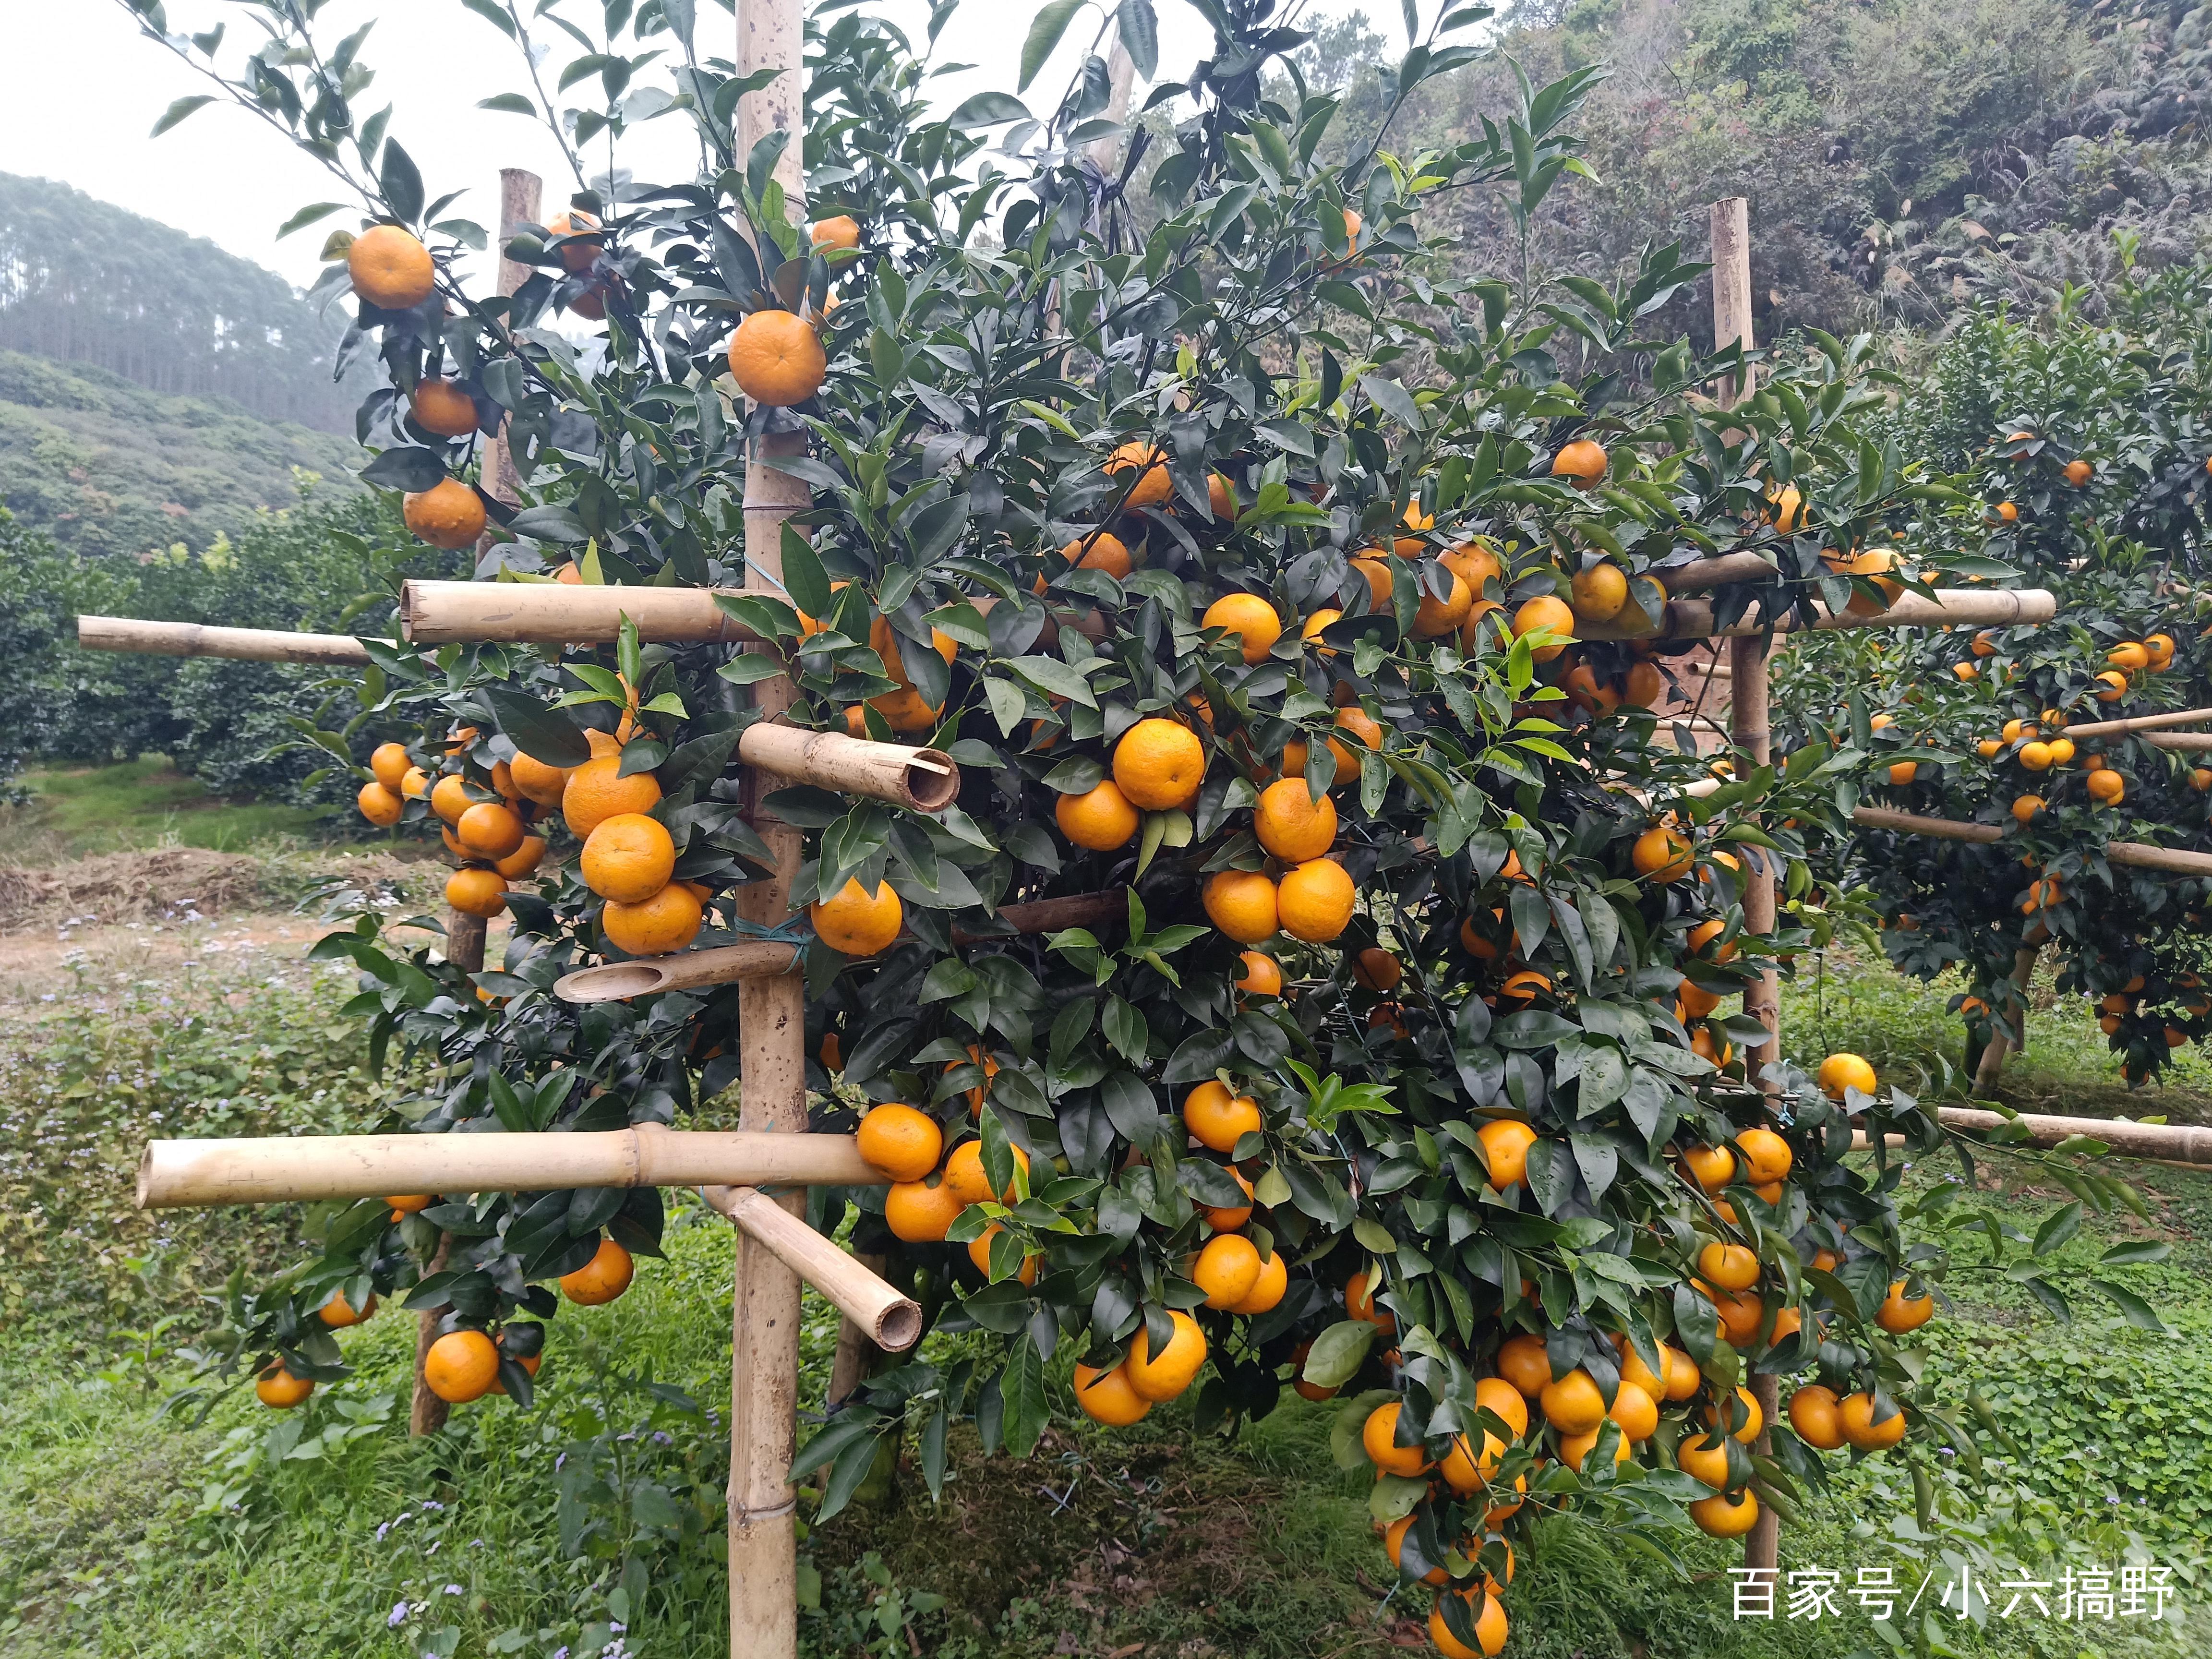 柑橘中的一匹黑马--沃柑，已成为家里的水果新宠